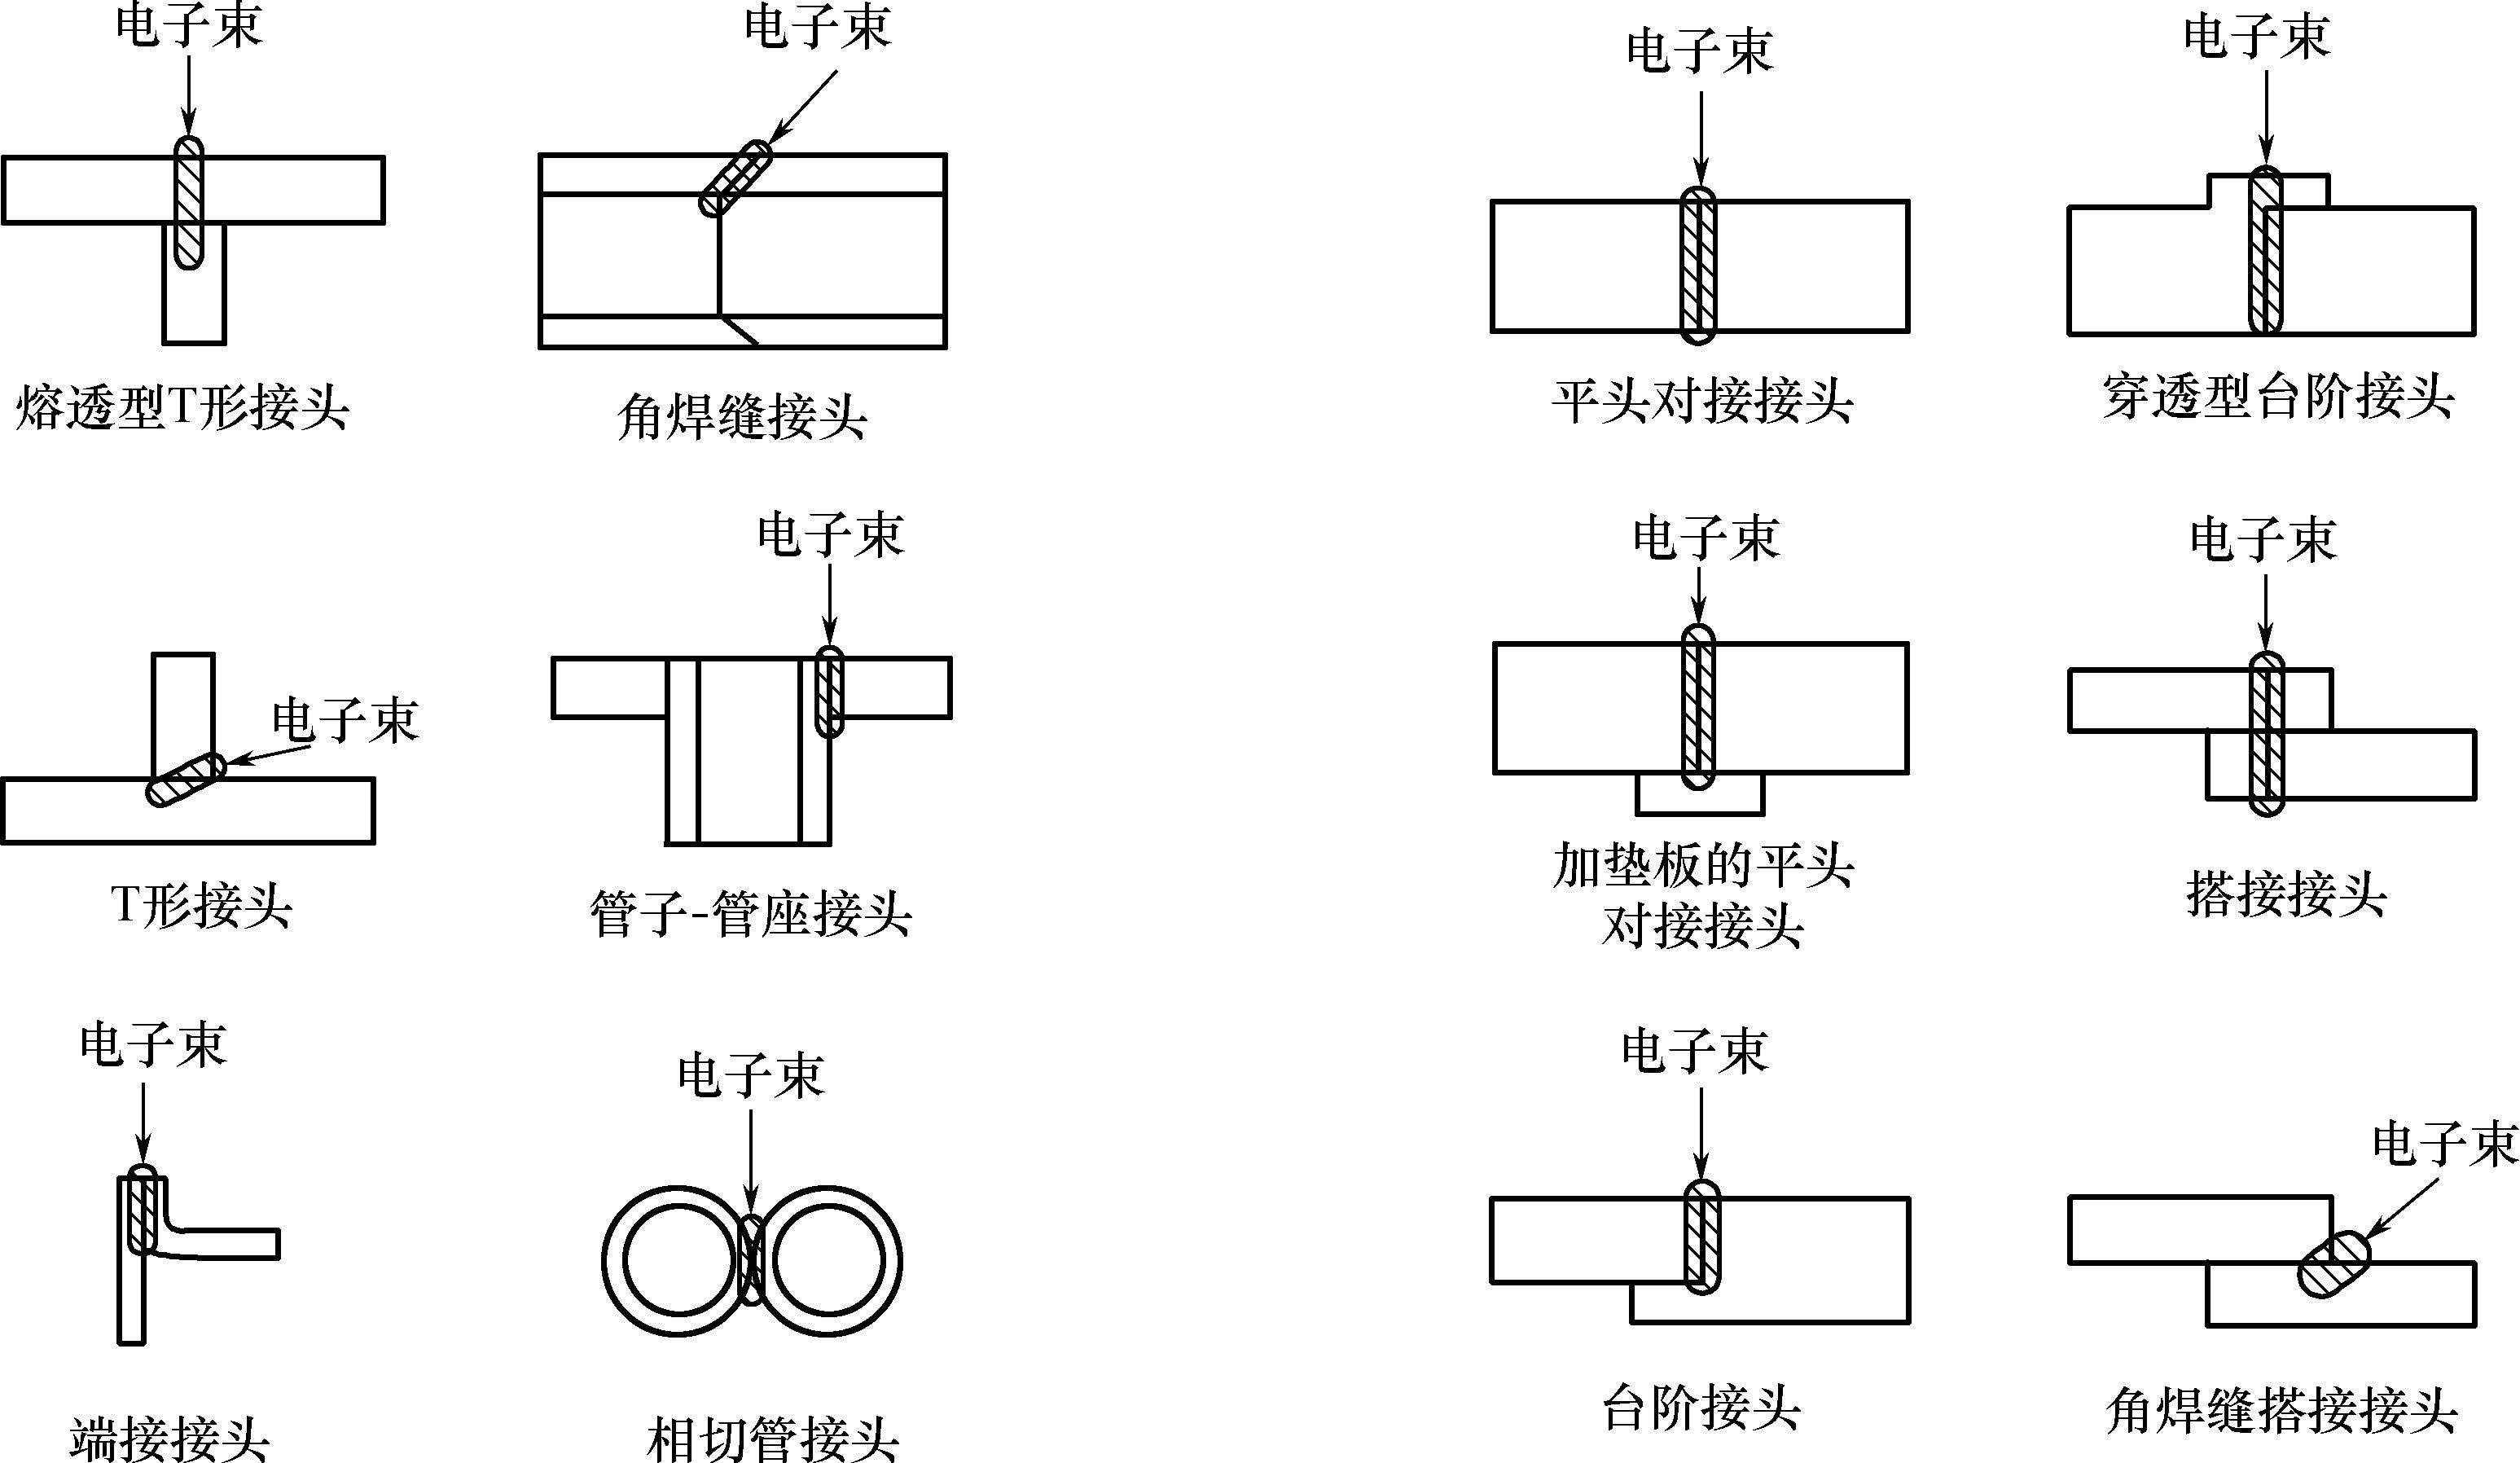 这些接头原则上可以用于电子束焊接的一次穿透完成.